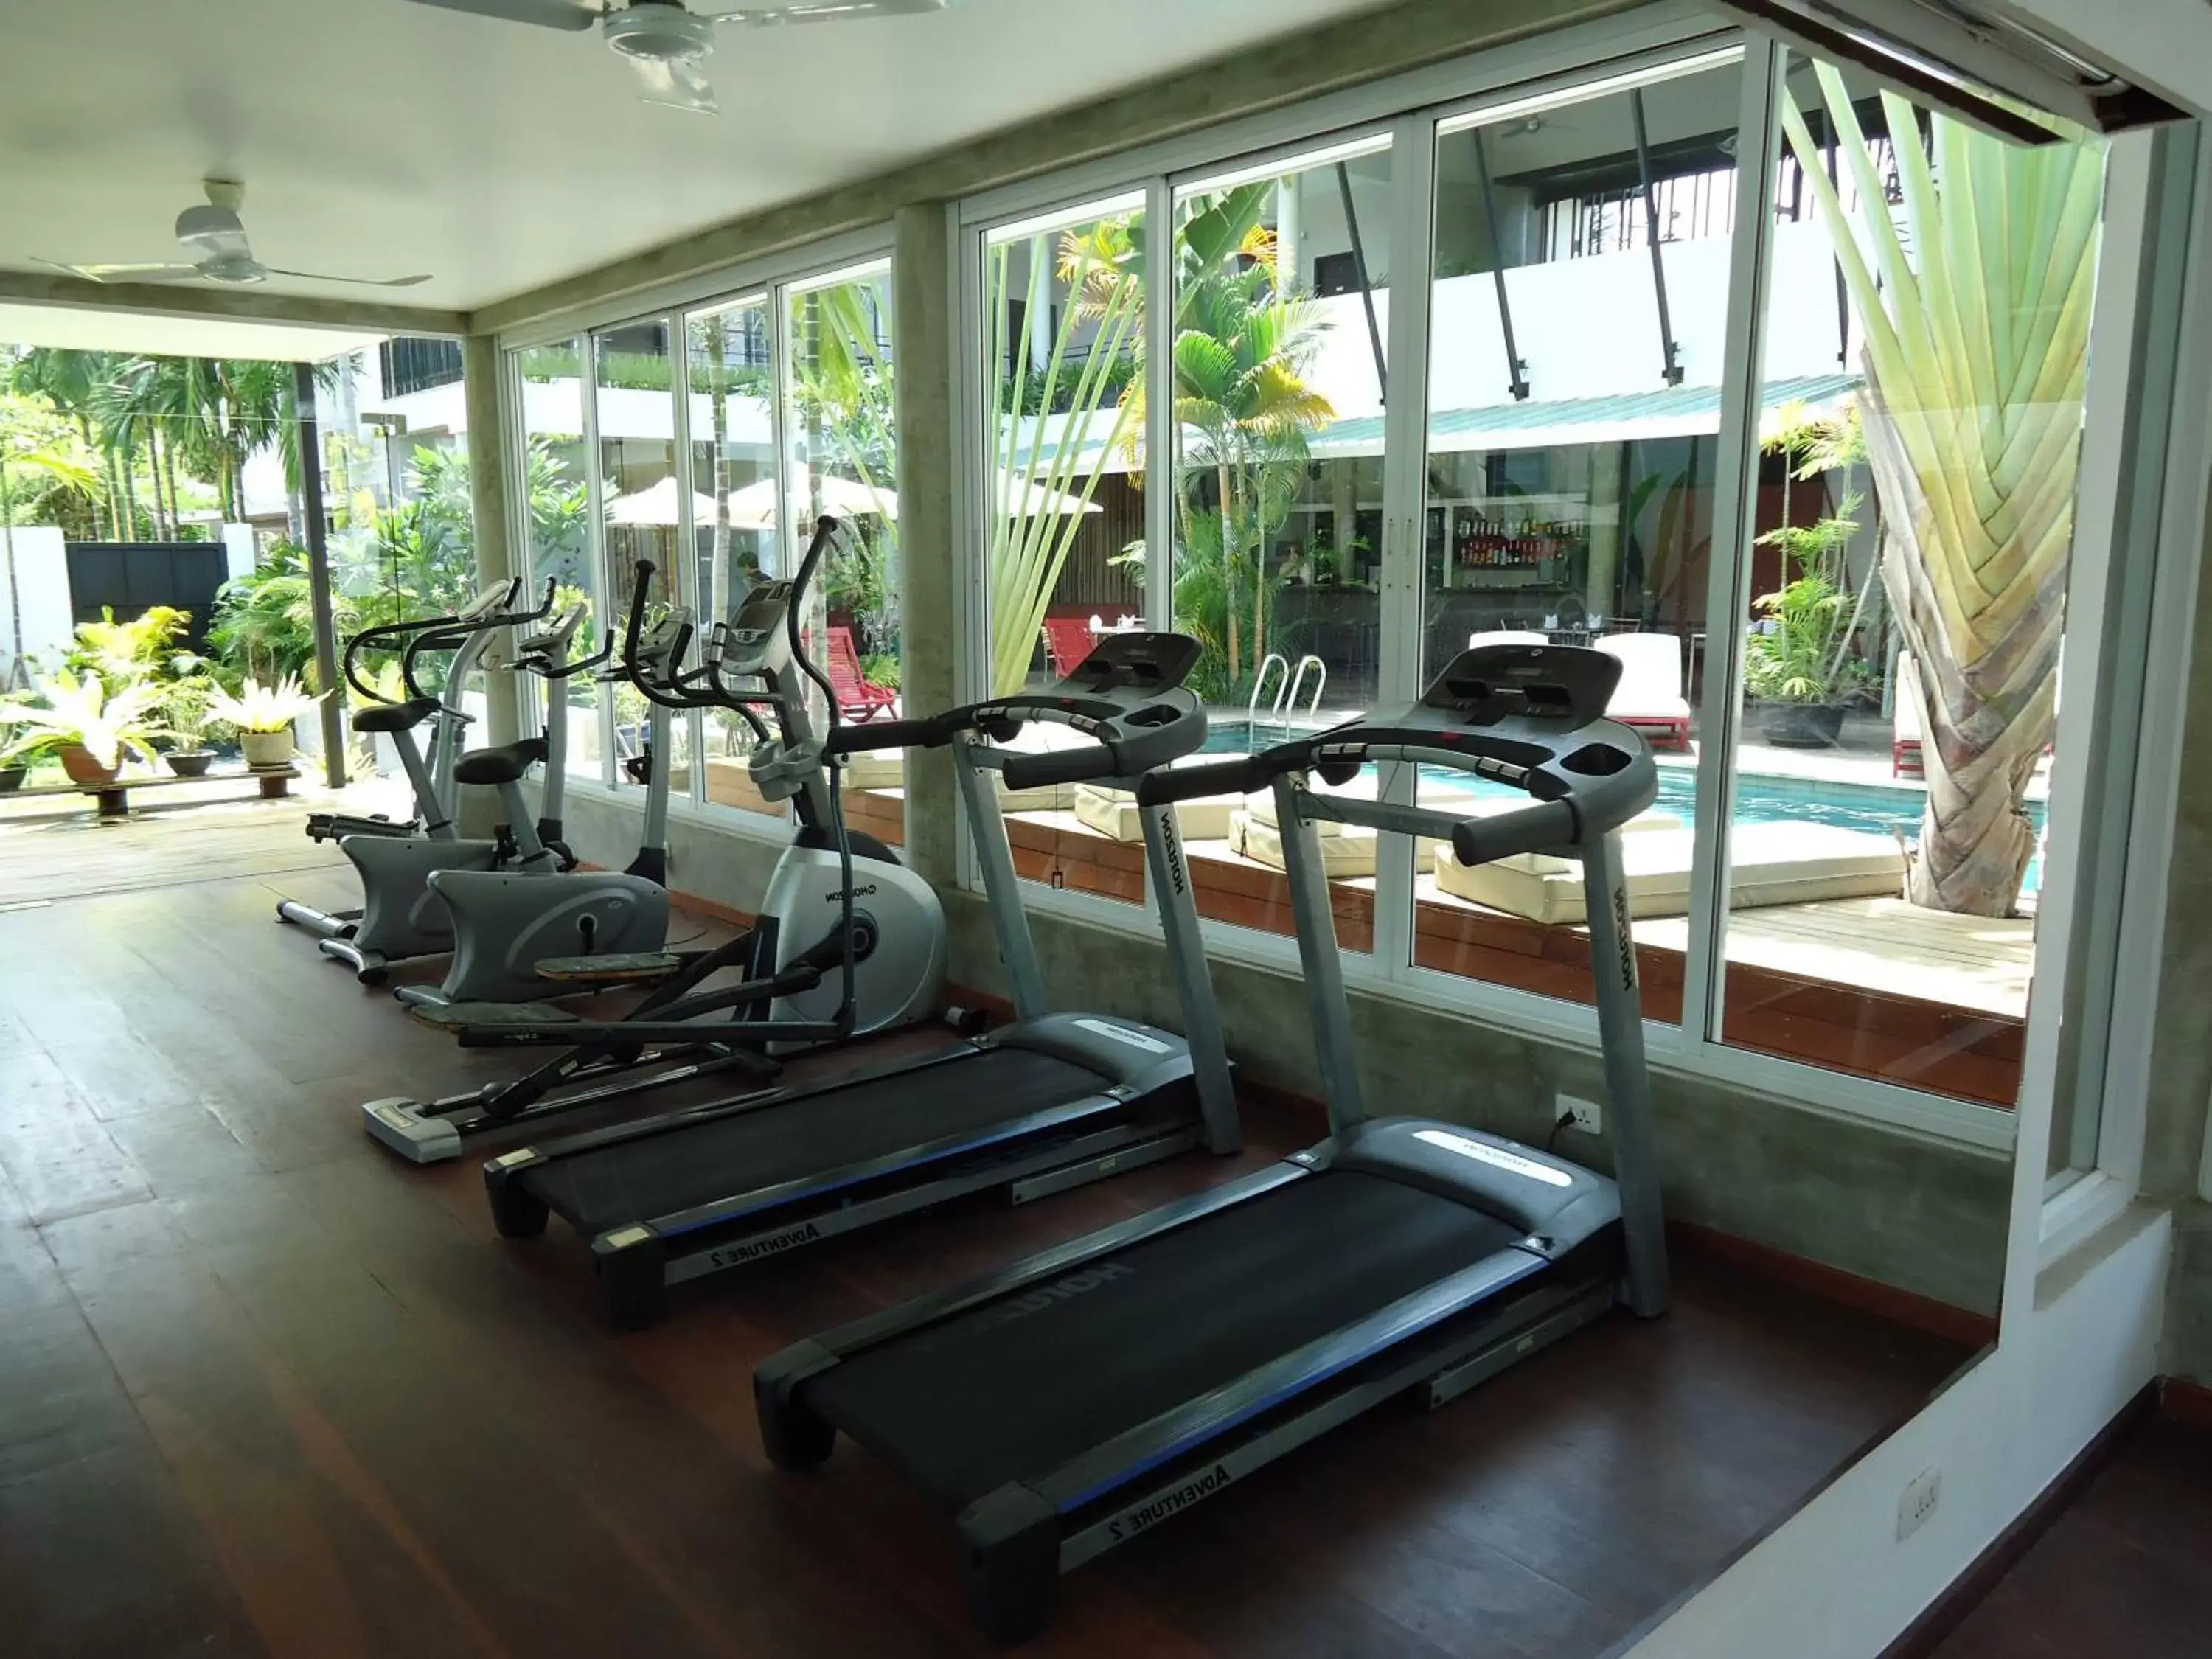 Fitness centre/facilities, Fitness Center/Facilities in MEN's Resort & Spa (Gay Hotel)